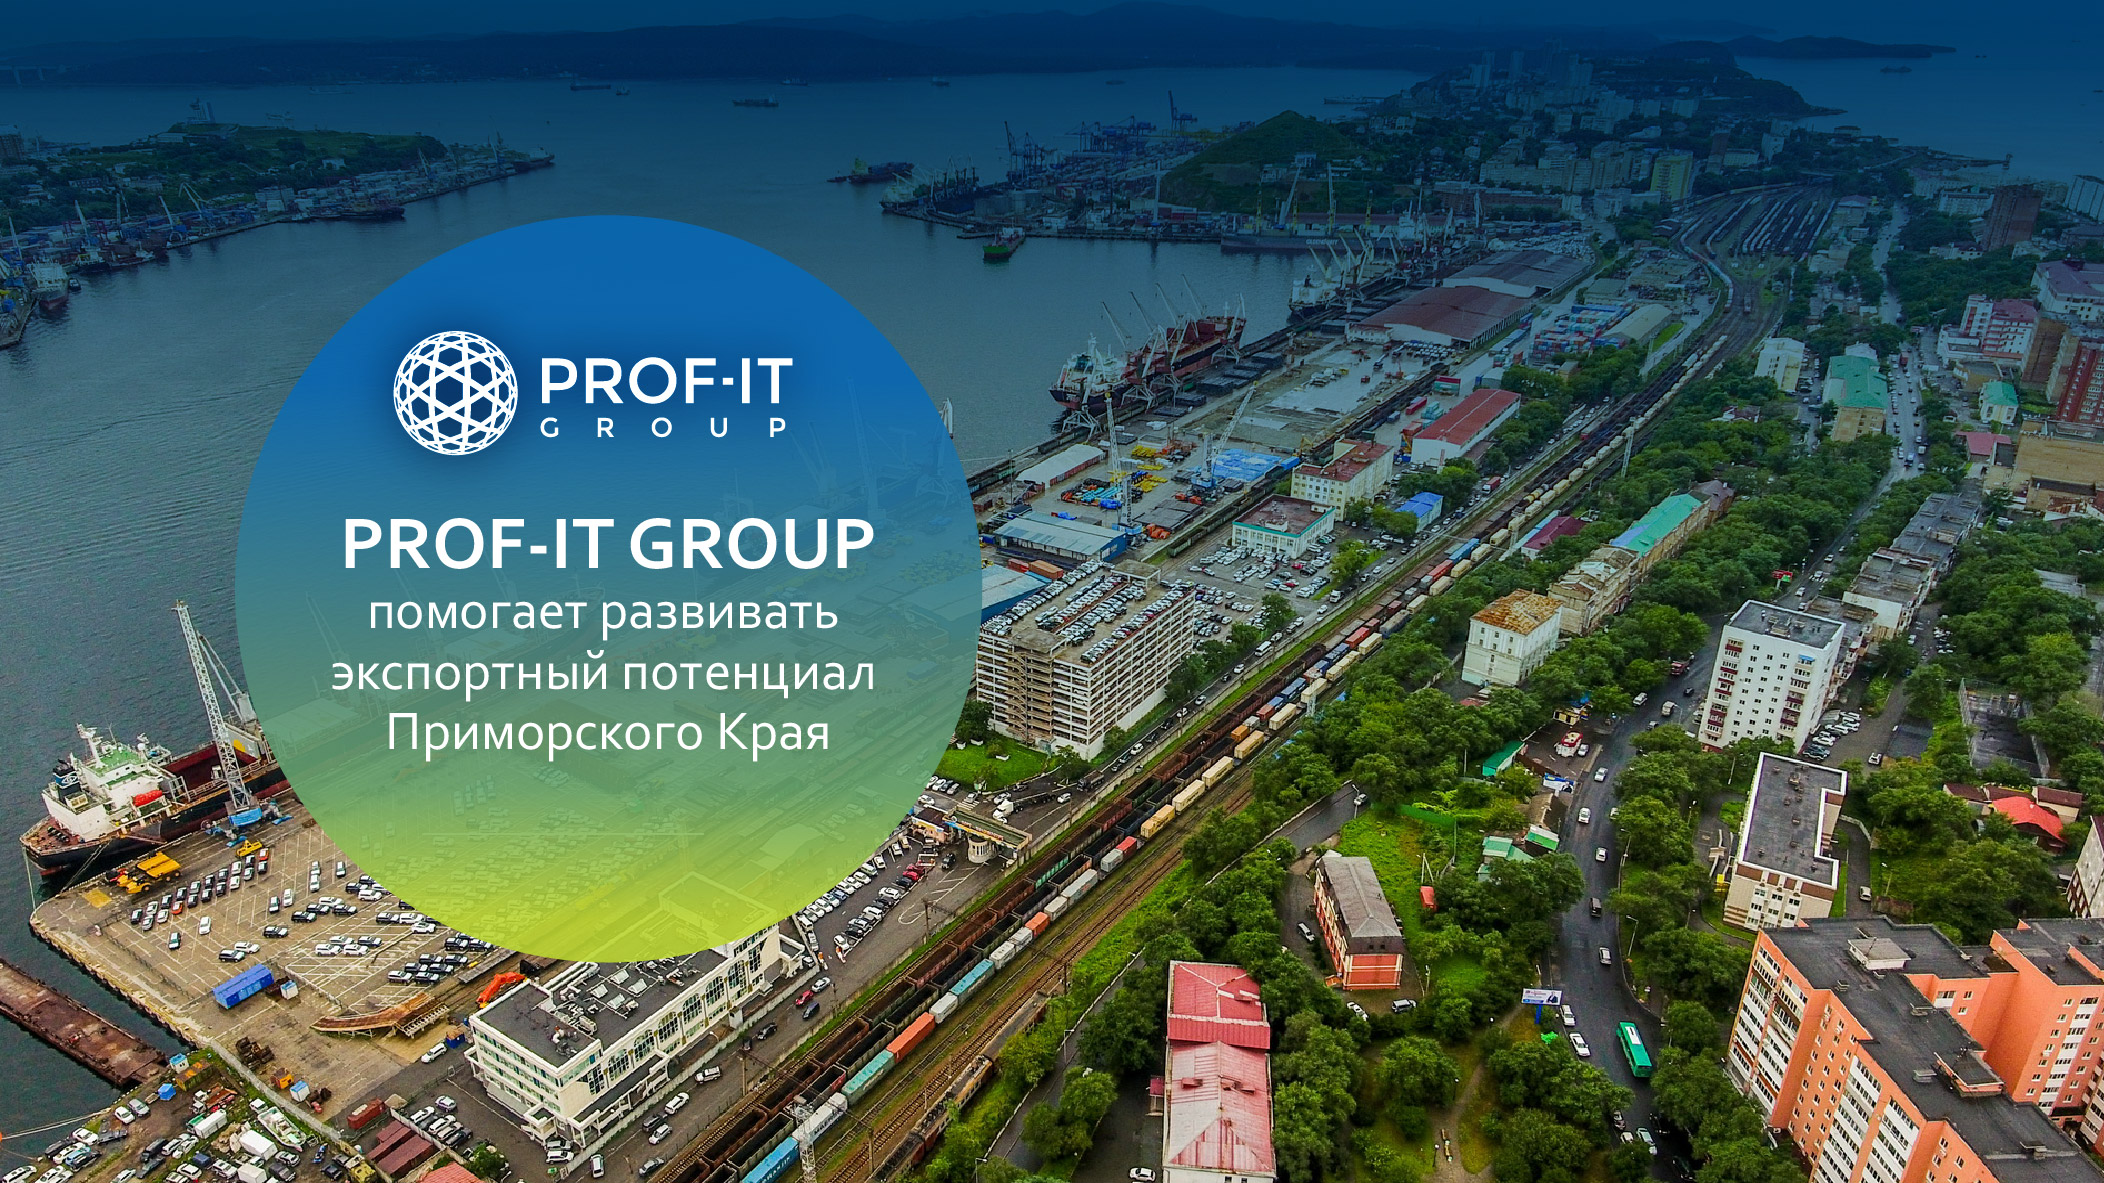 PROF-IT GROUP помогает развивать экспортный потенциал Приморского Края